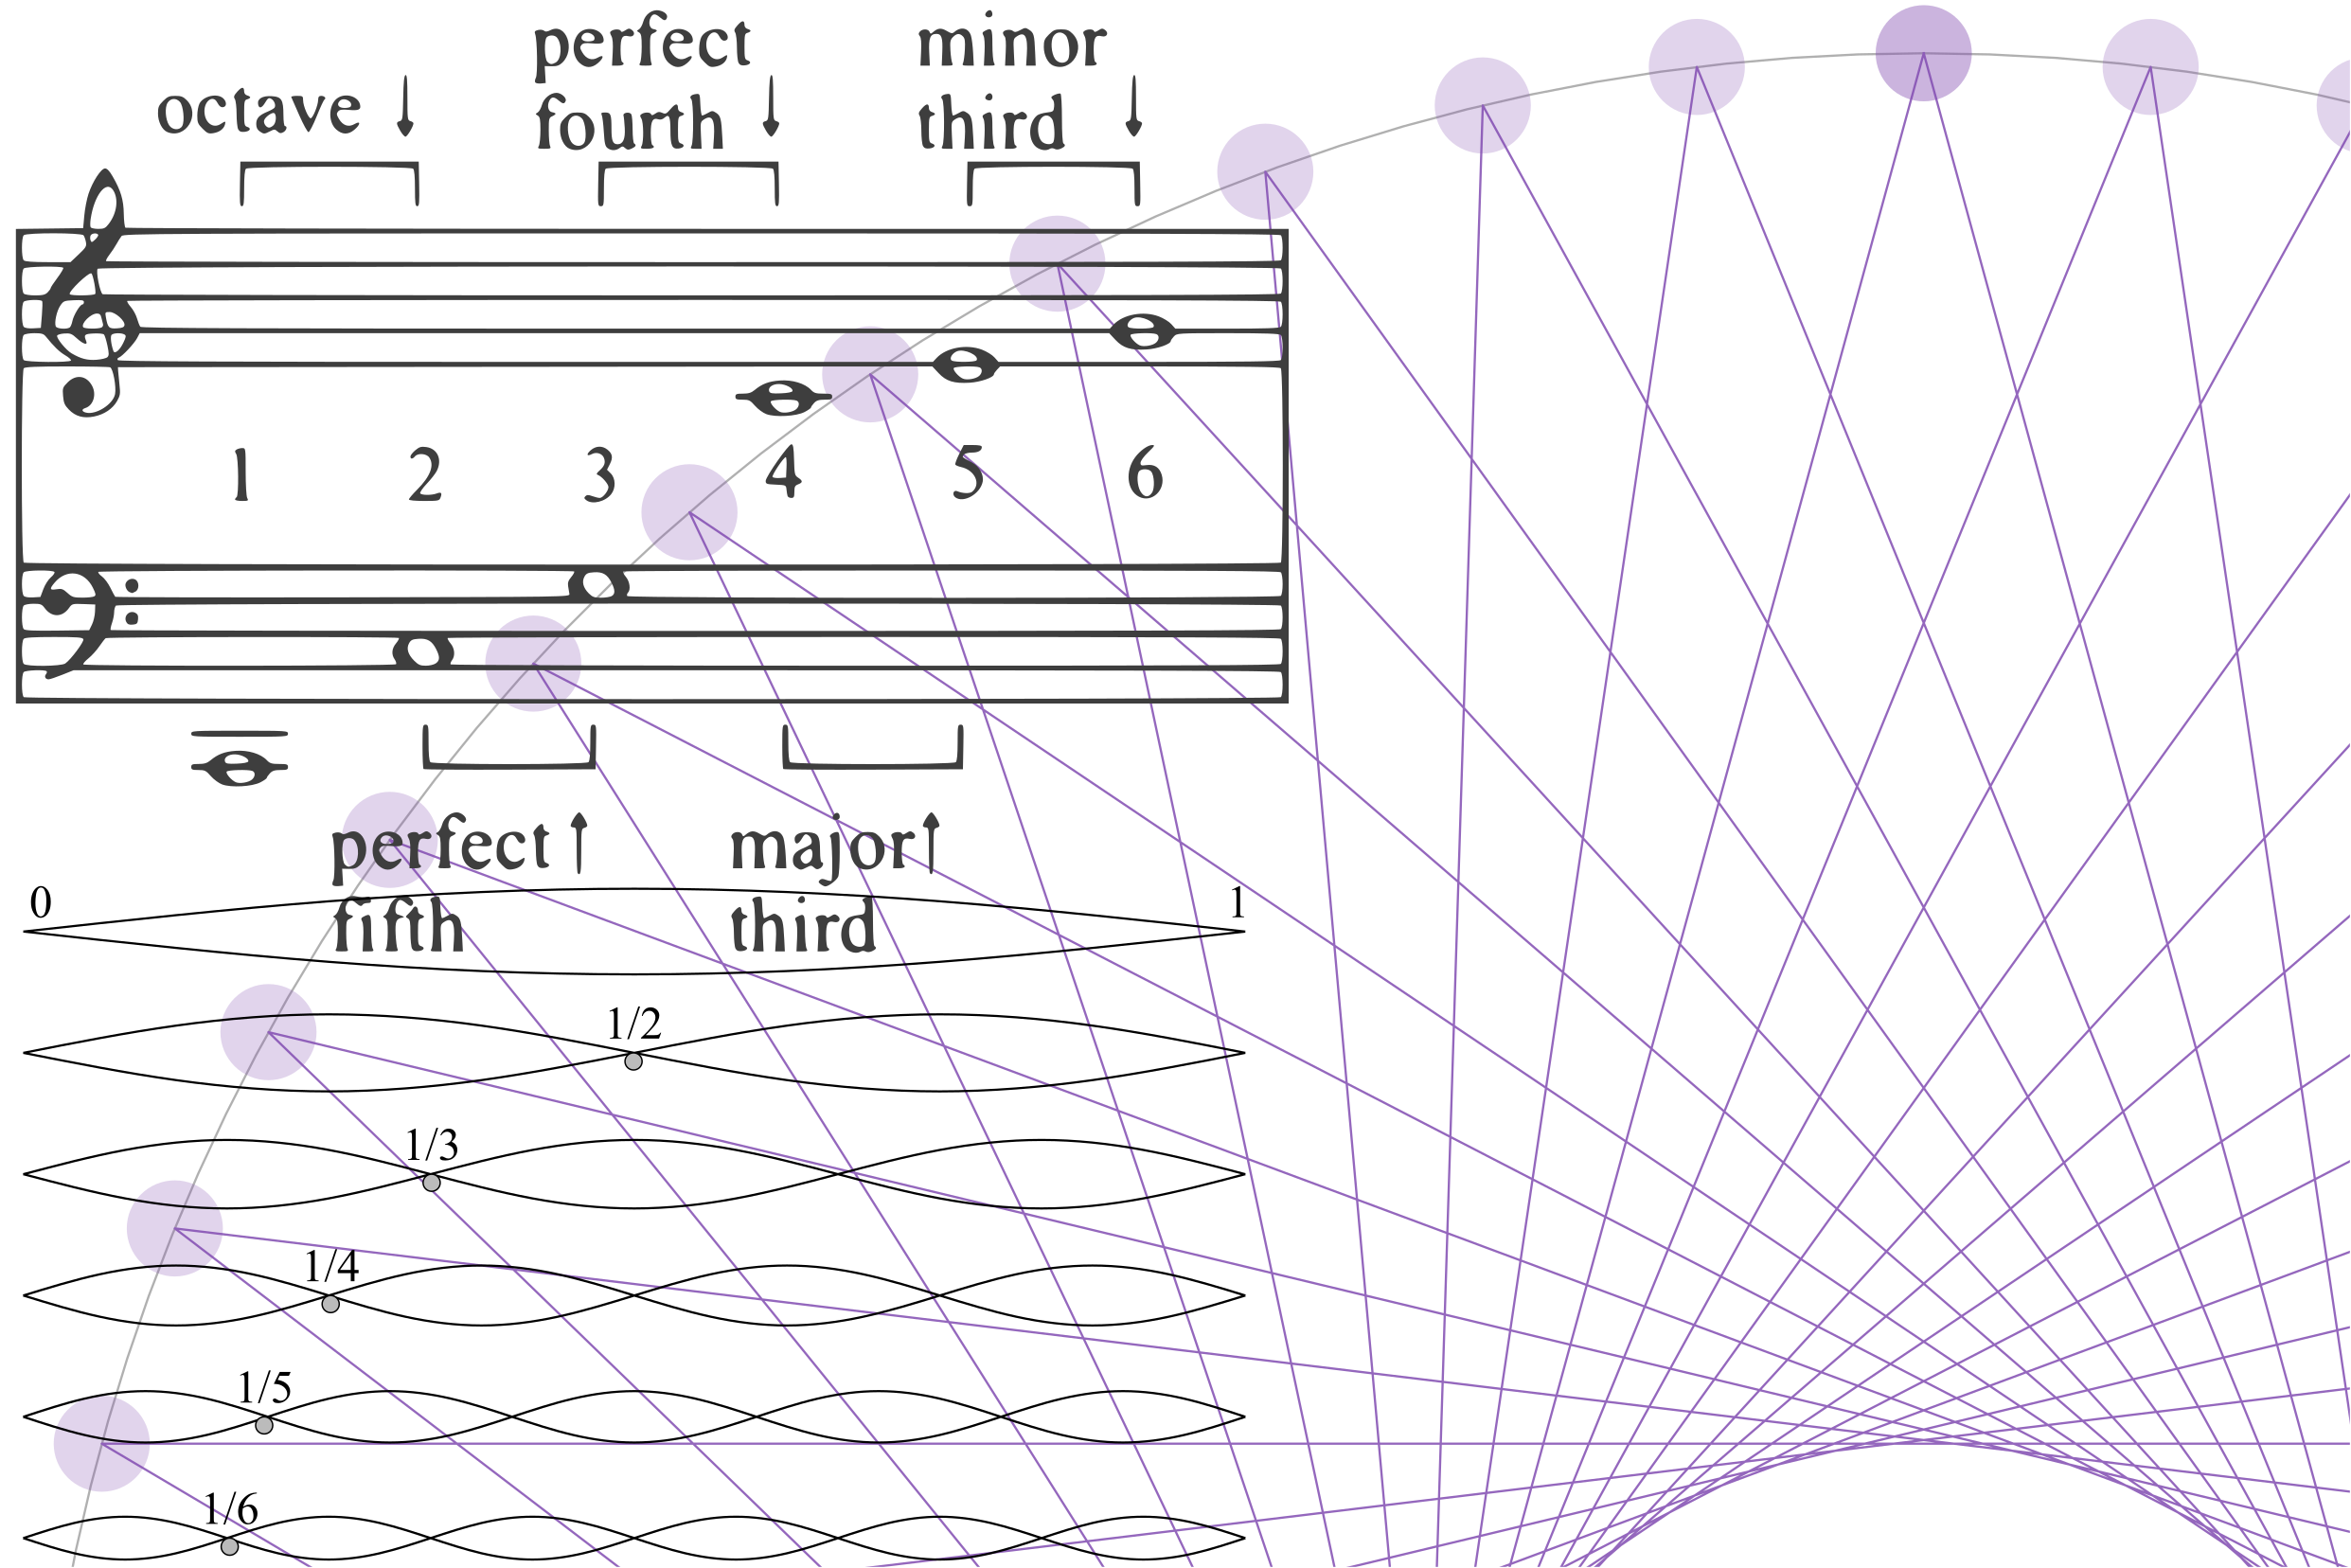 موسیقی زبانی ریاضی